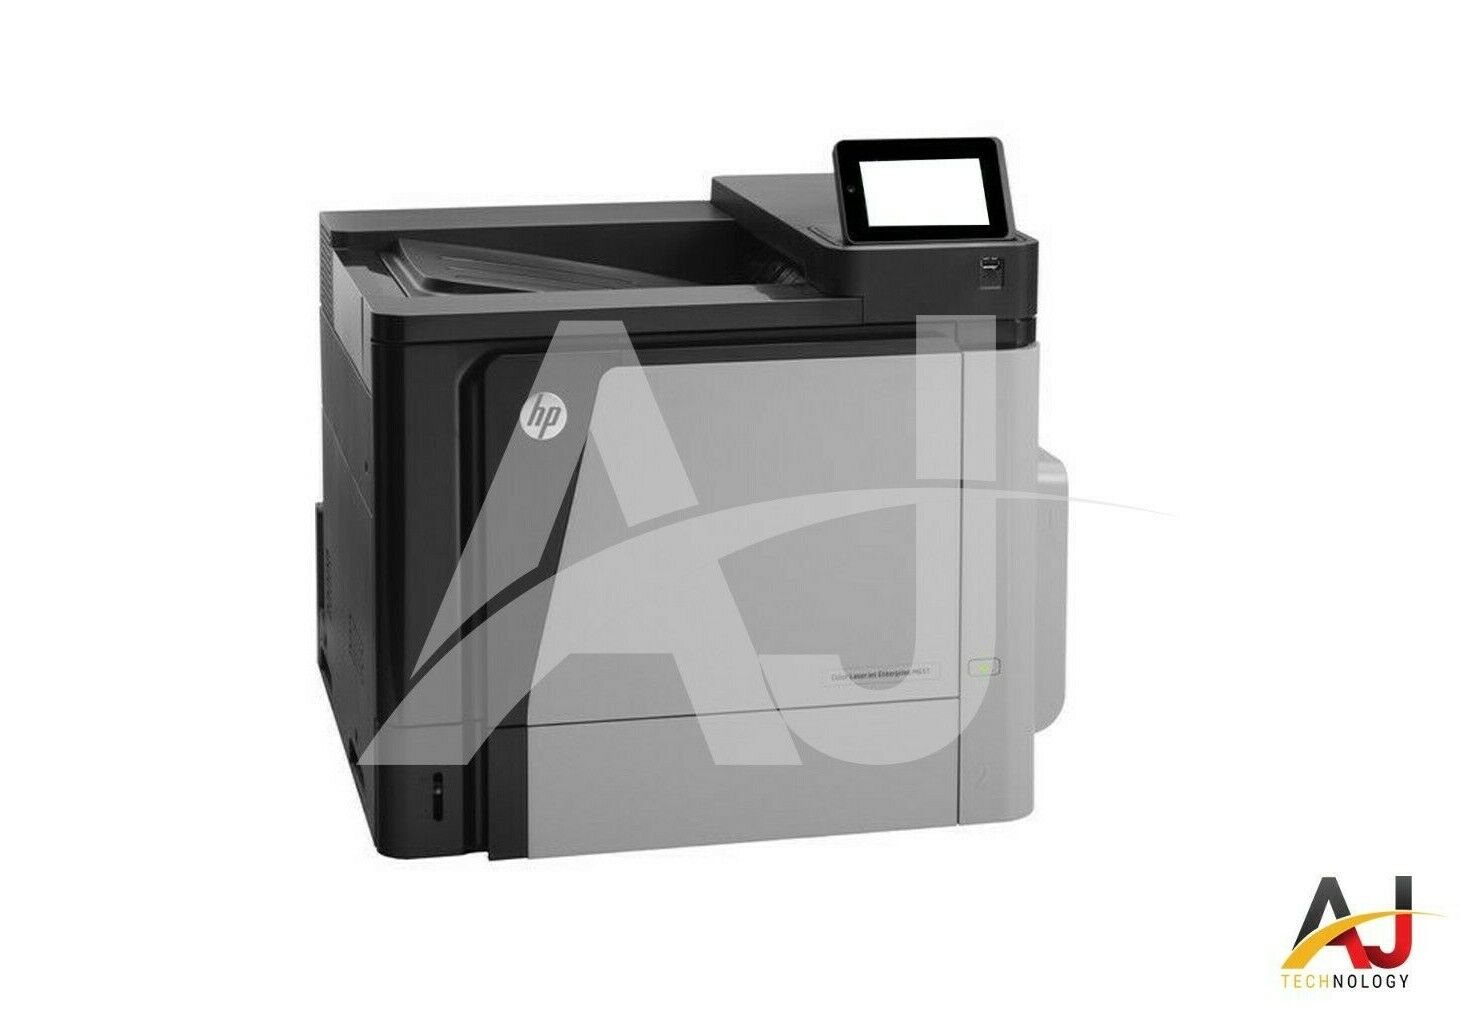 HP Color LaserJet Enterprise M651dn Work group laser printer with Toners